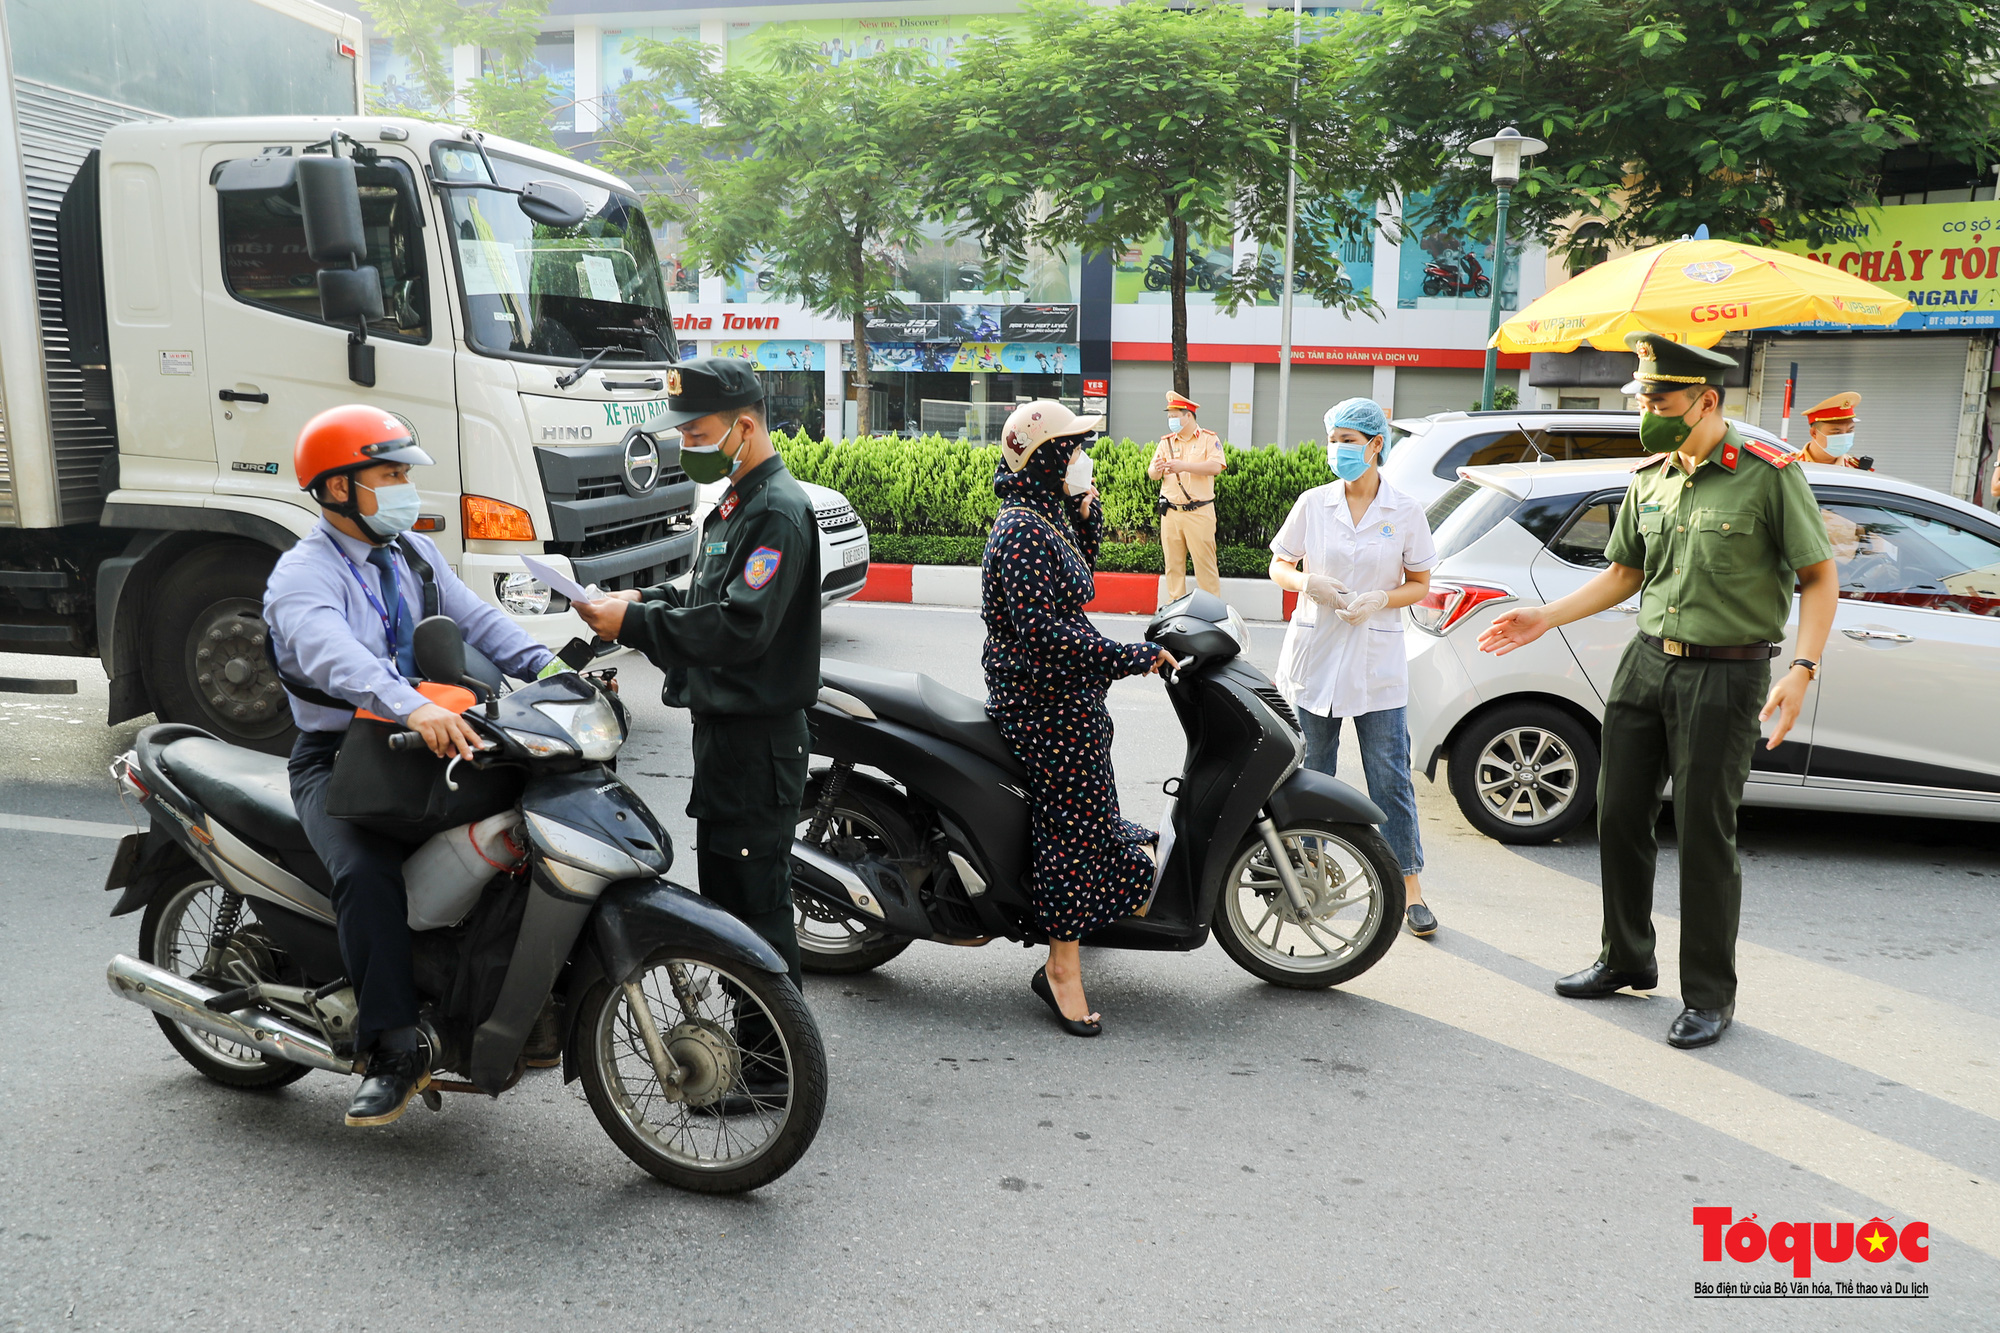 Hà Nội sẽ bắt đầu kiểm tra nghiêm giấy đi đường mới vào ngày 8/9 - Ảnh 3.